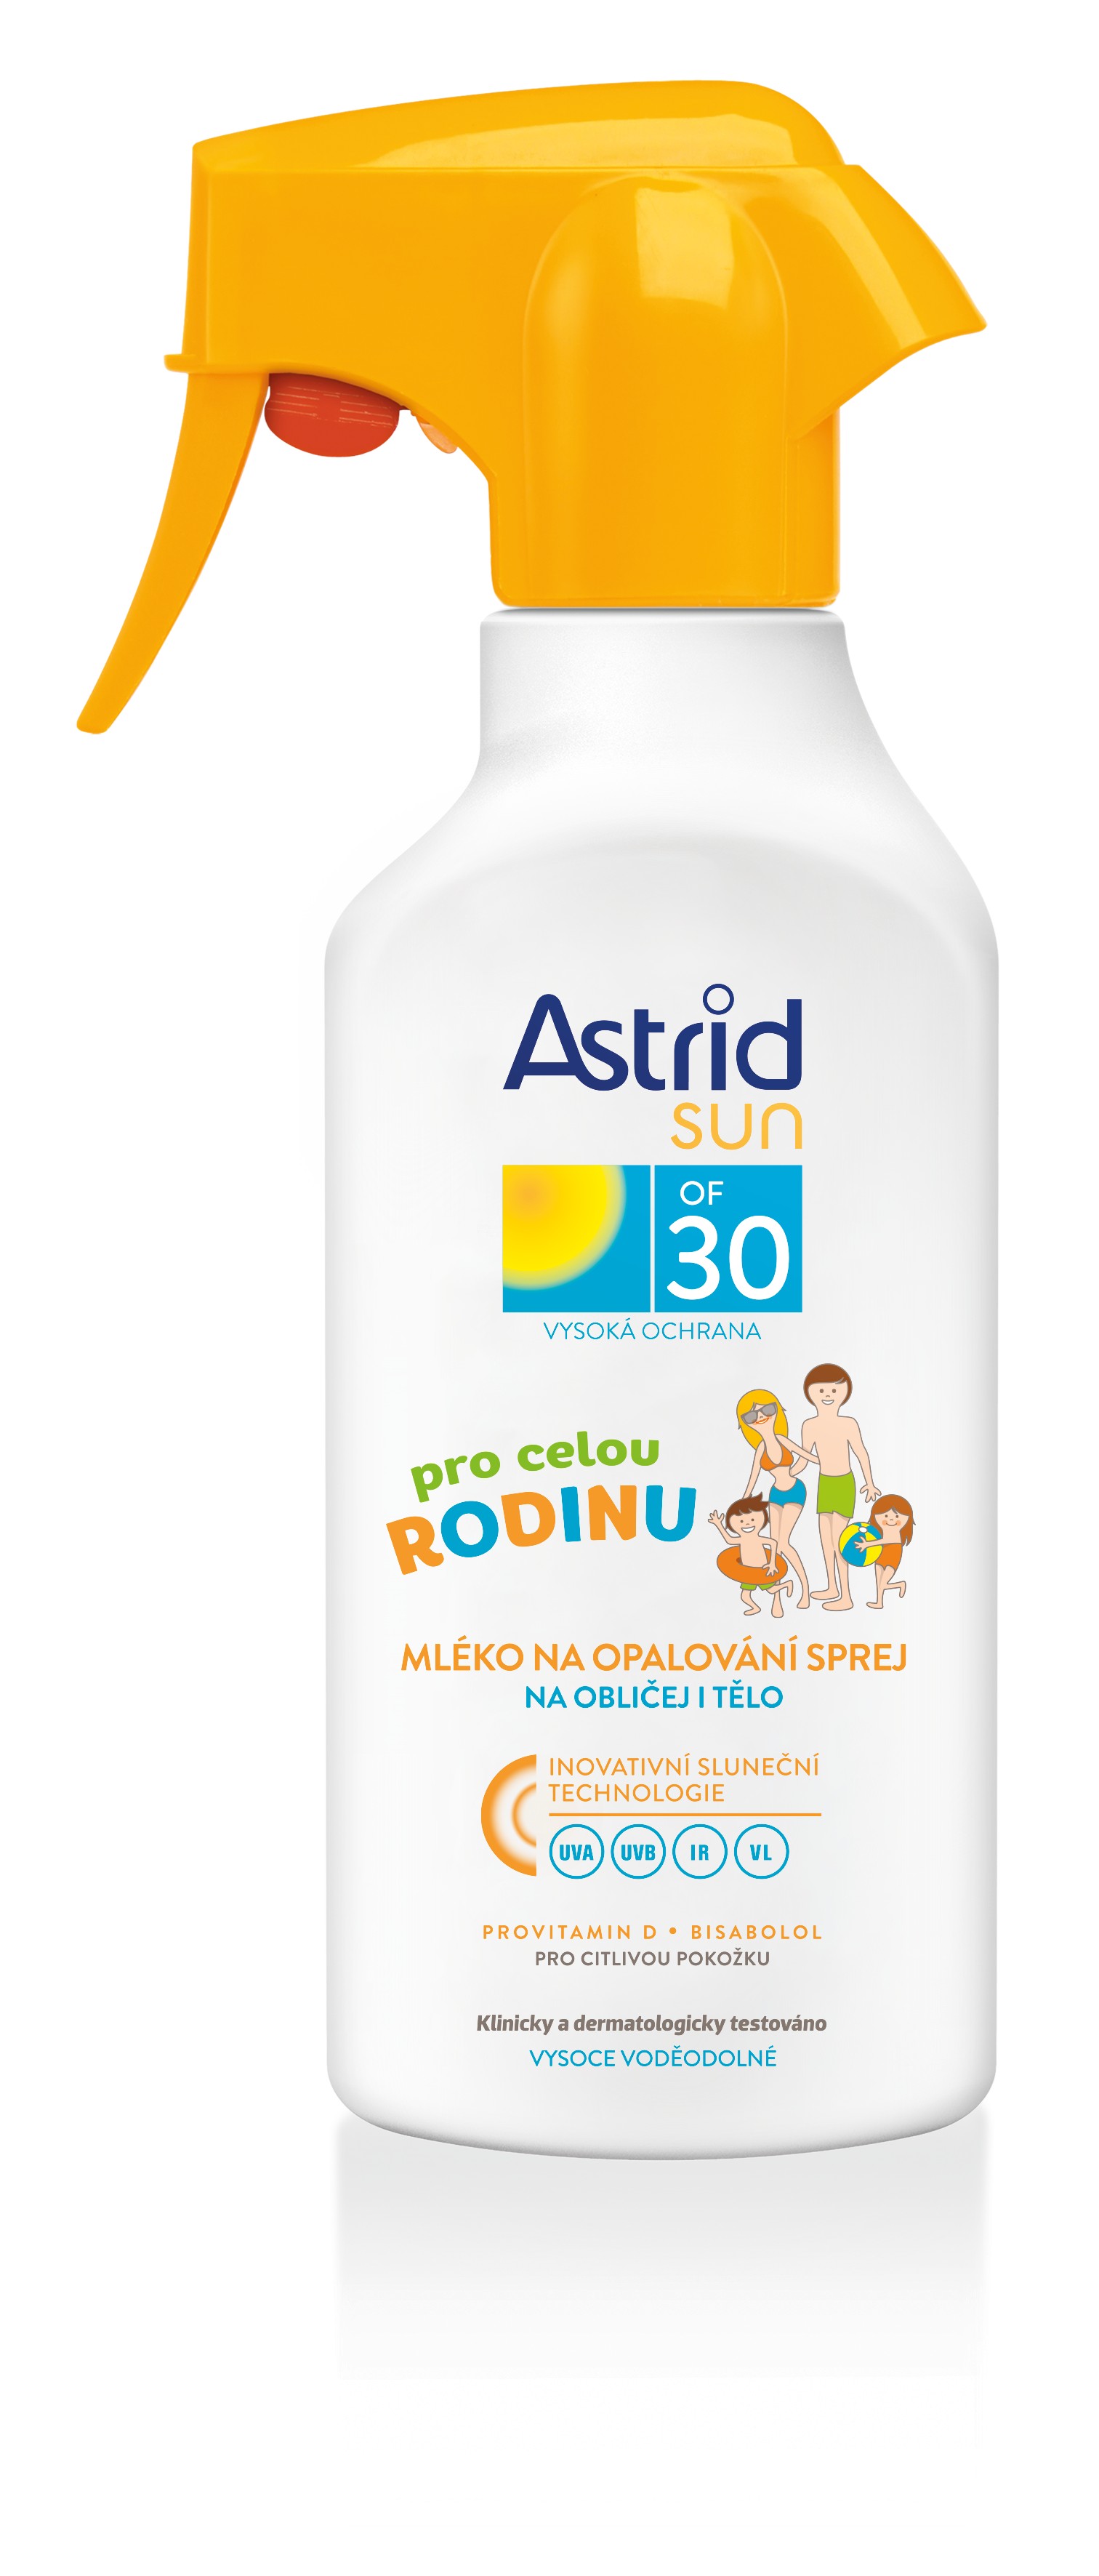 Astrid Rodinné mléko na opalování ve spreji pro citlivou pokožku OF 30 Sun 270 ml